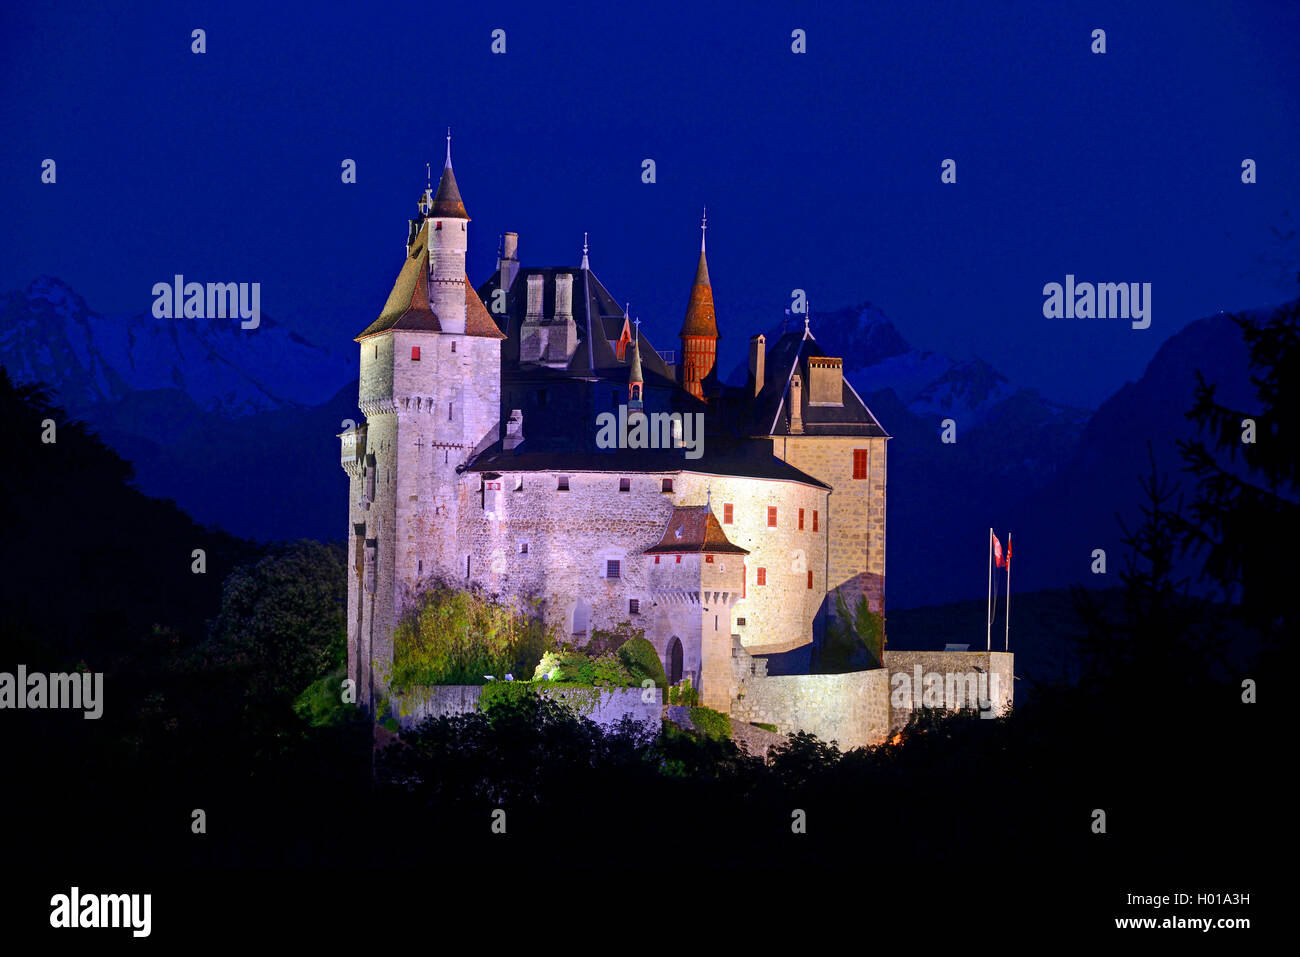 Illumintated château de Menthon Saint Bernard à partir de la 12e siècle, France, Haute-Savoie, Menthon-Saint-Bernard Banque D'Images